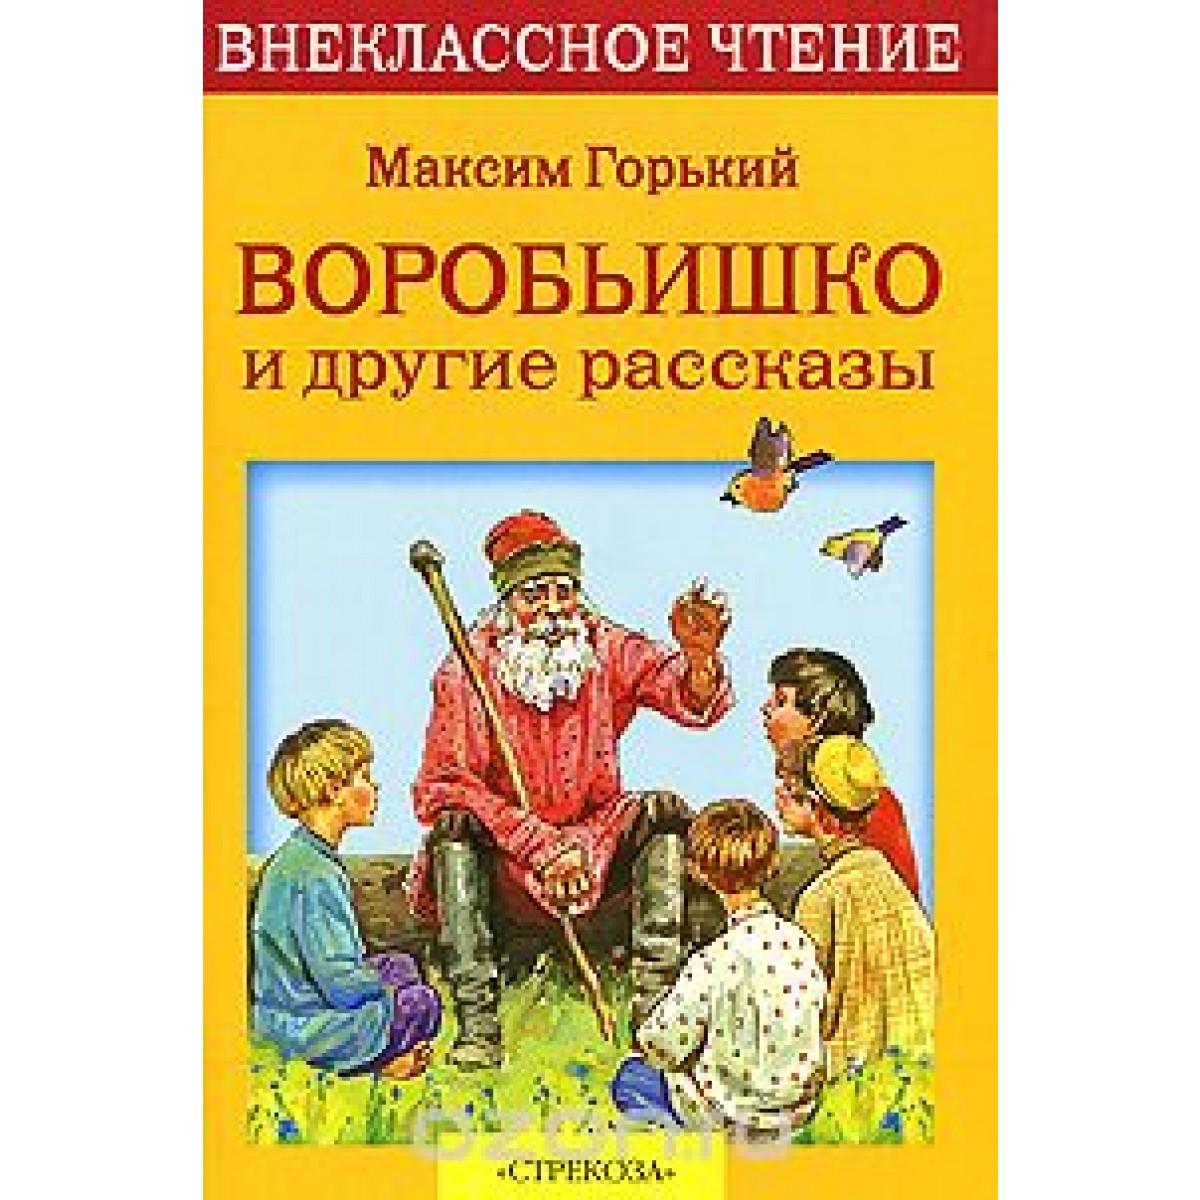 Произведения Горького для детей